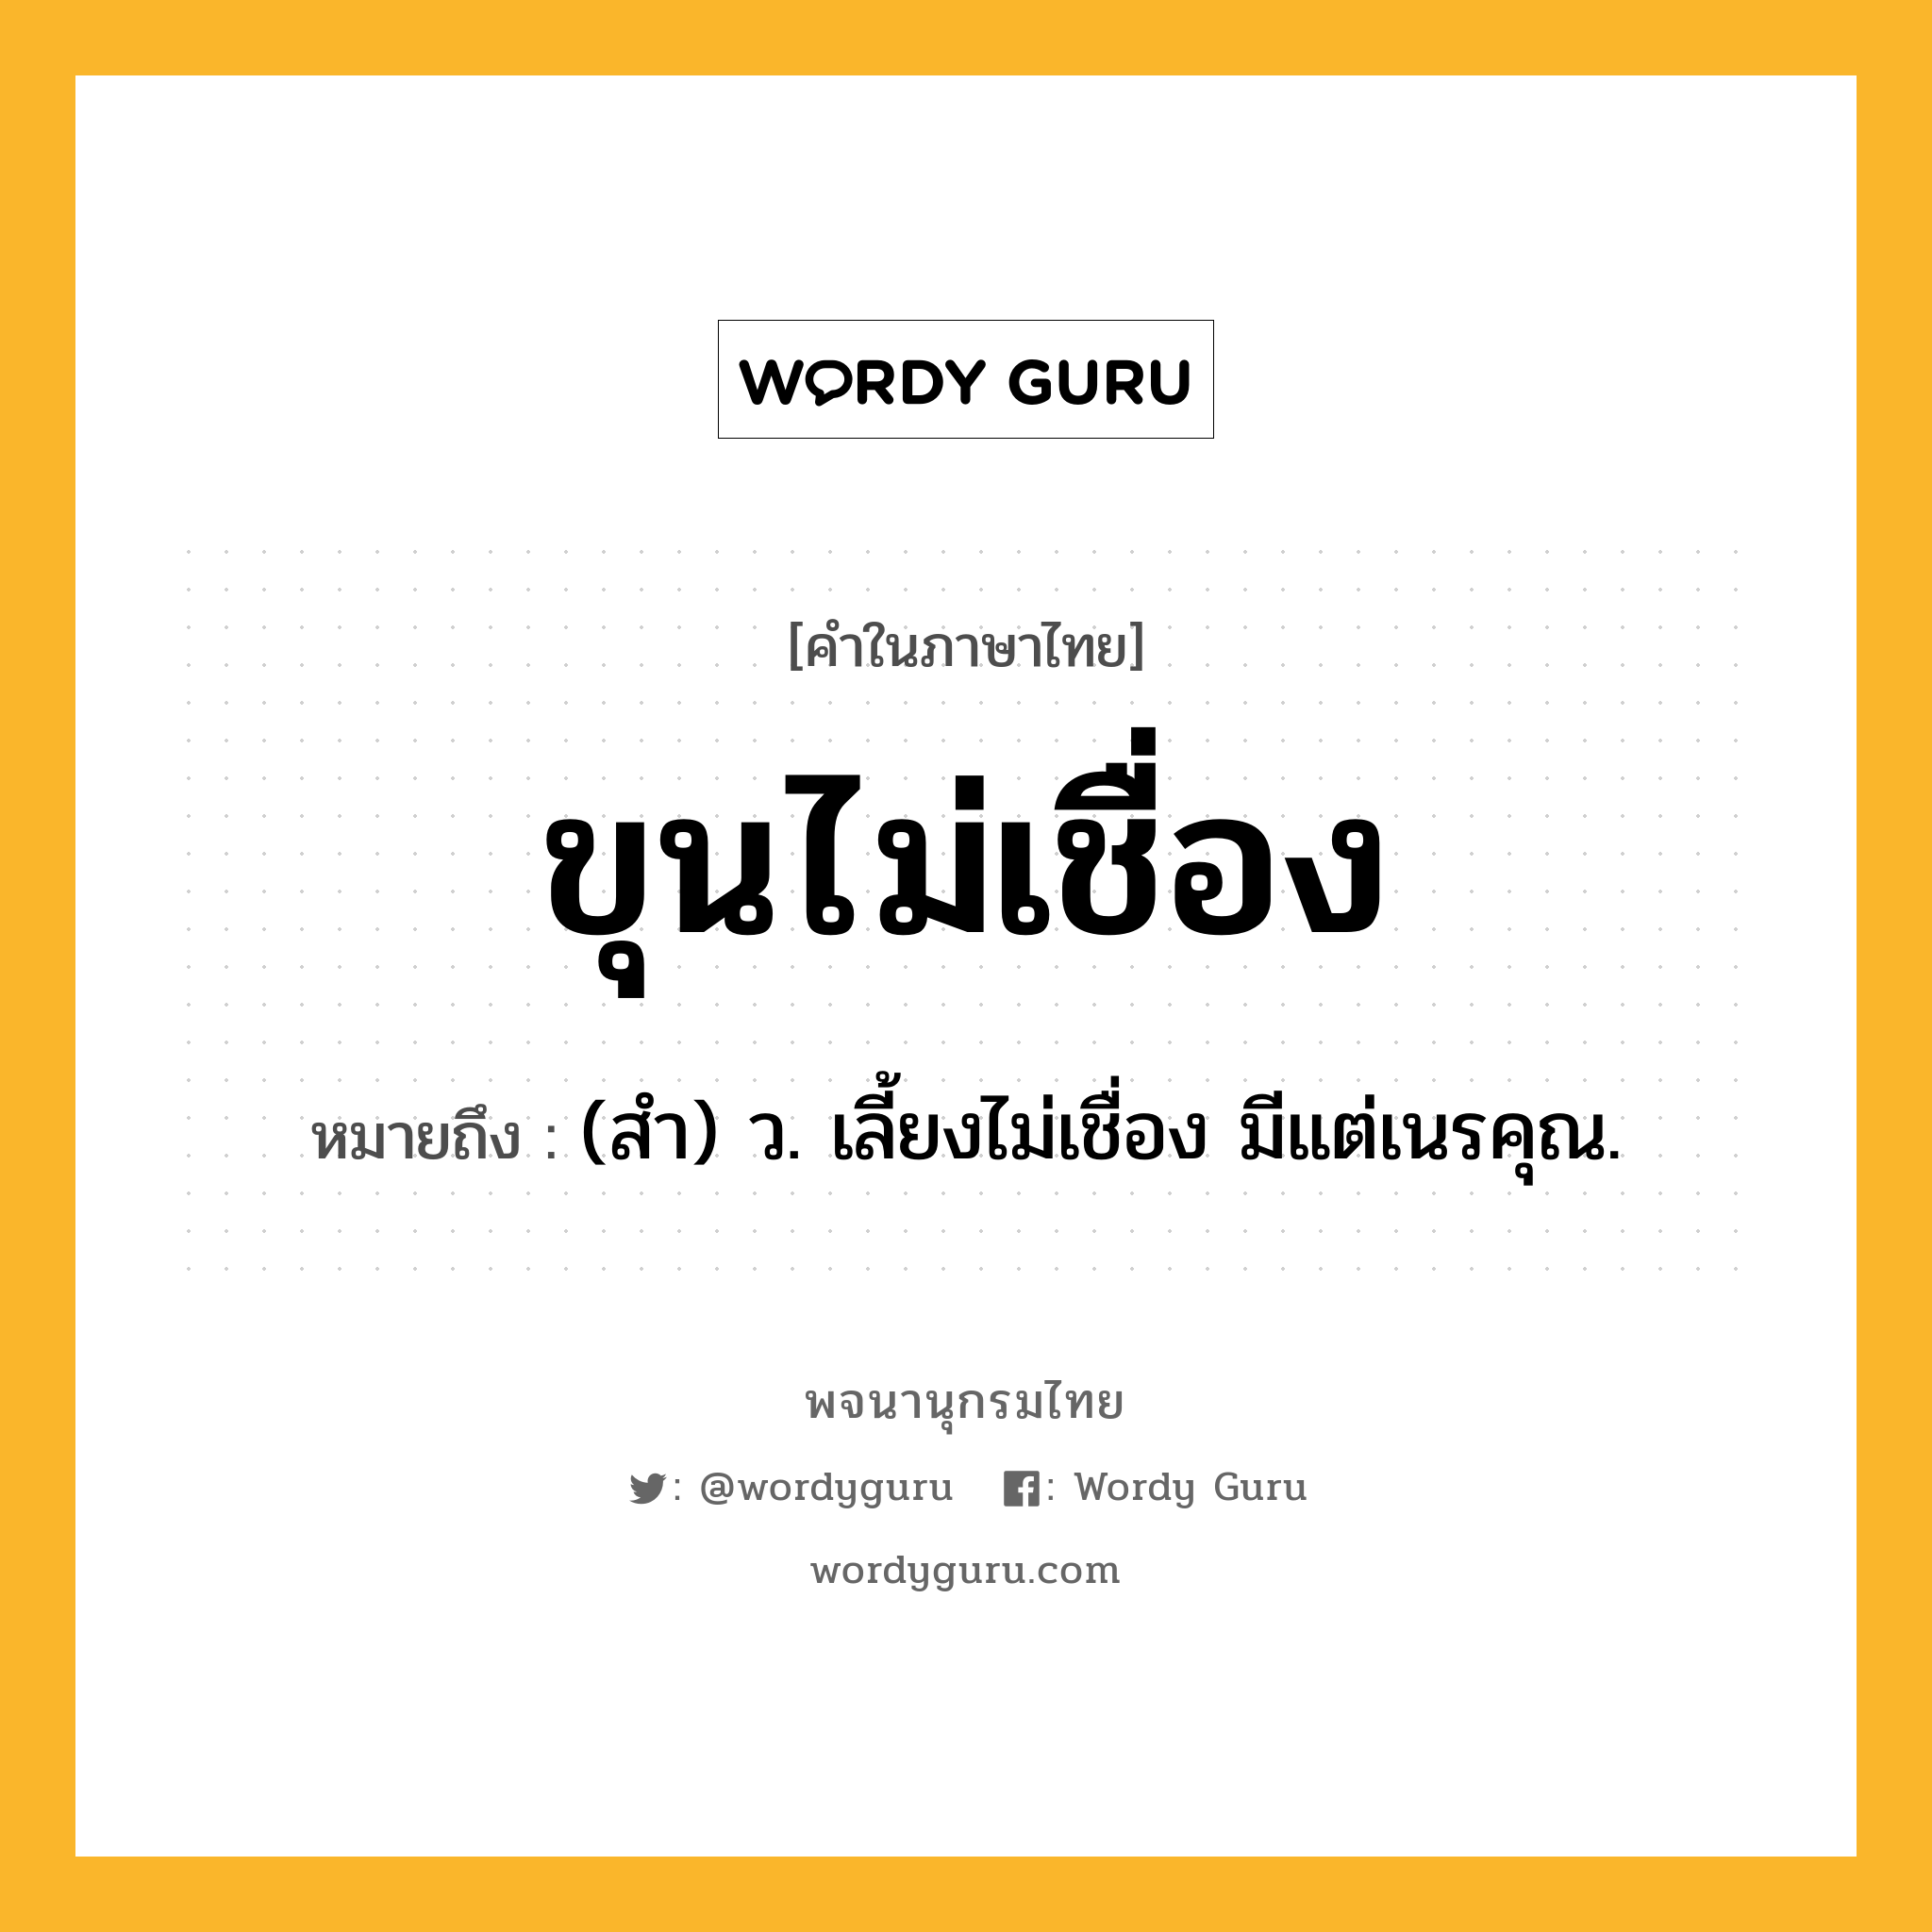 ขุนไม่เชื่อง หมายถึงอะไร?, คำในภาษาไทย ขุนไม่เชื่อง หมายถึง (สํา) ว. เลี้ยงไม่เชื่อง มีแต่เนรคุณ.